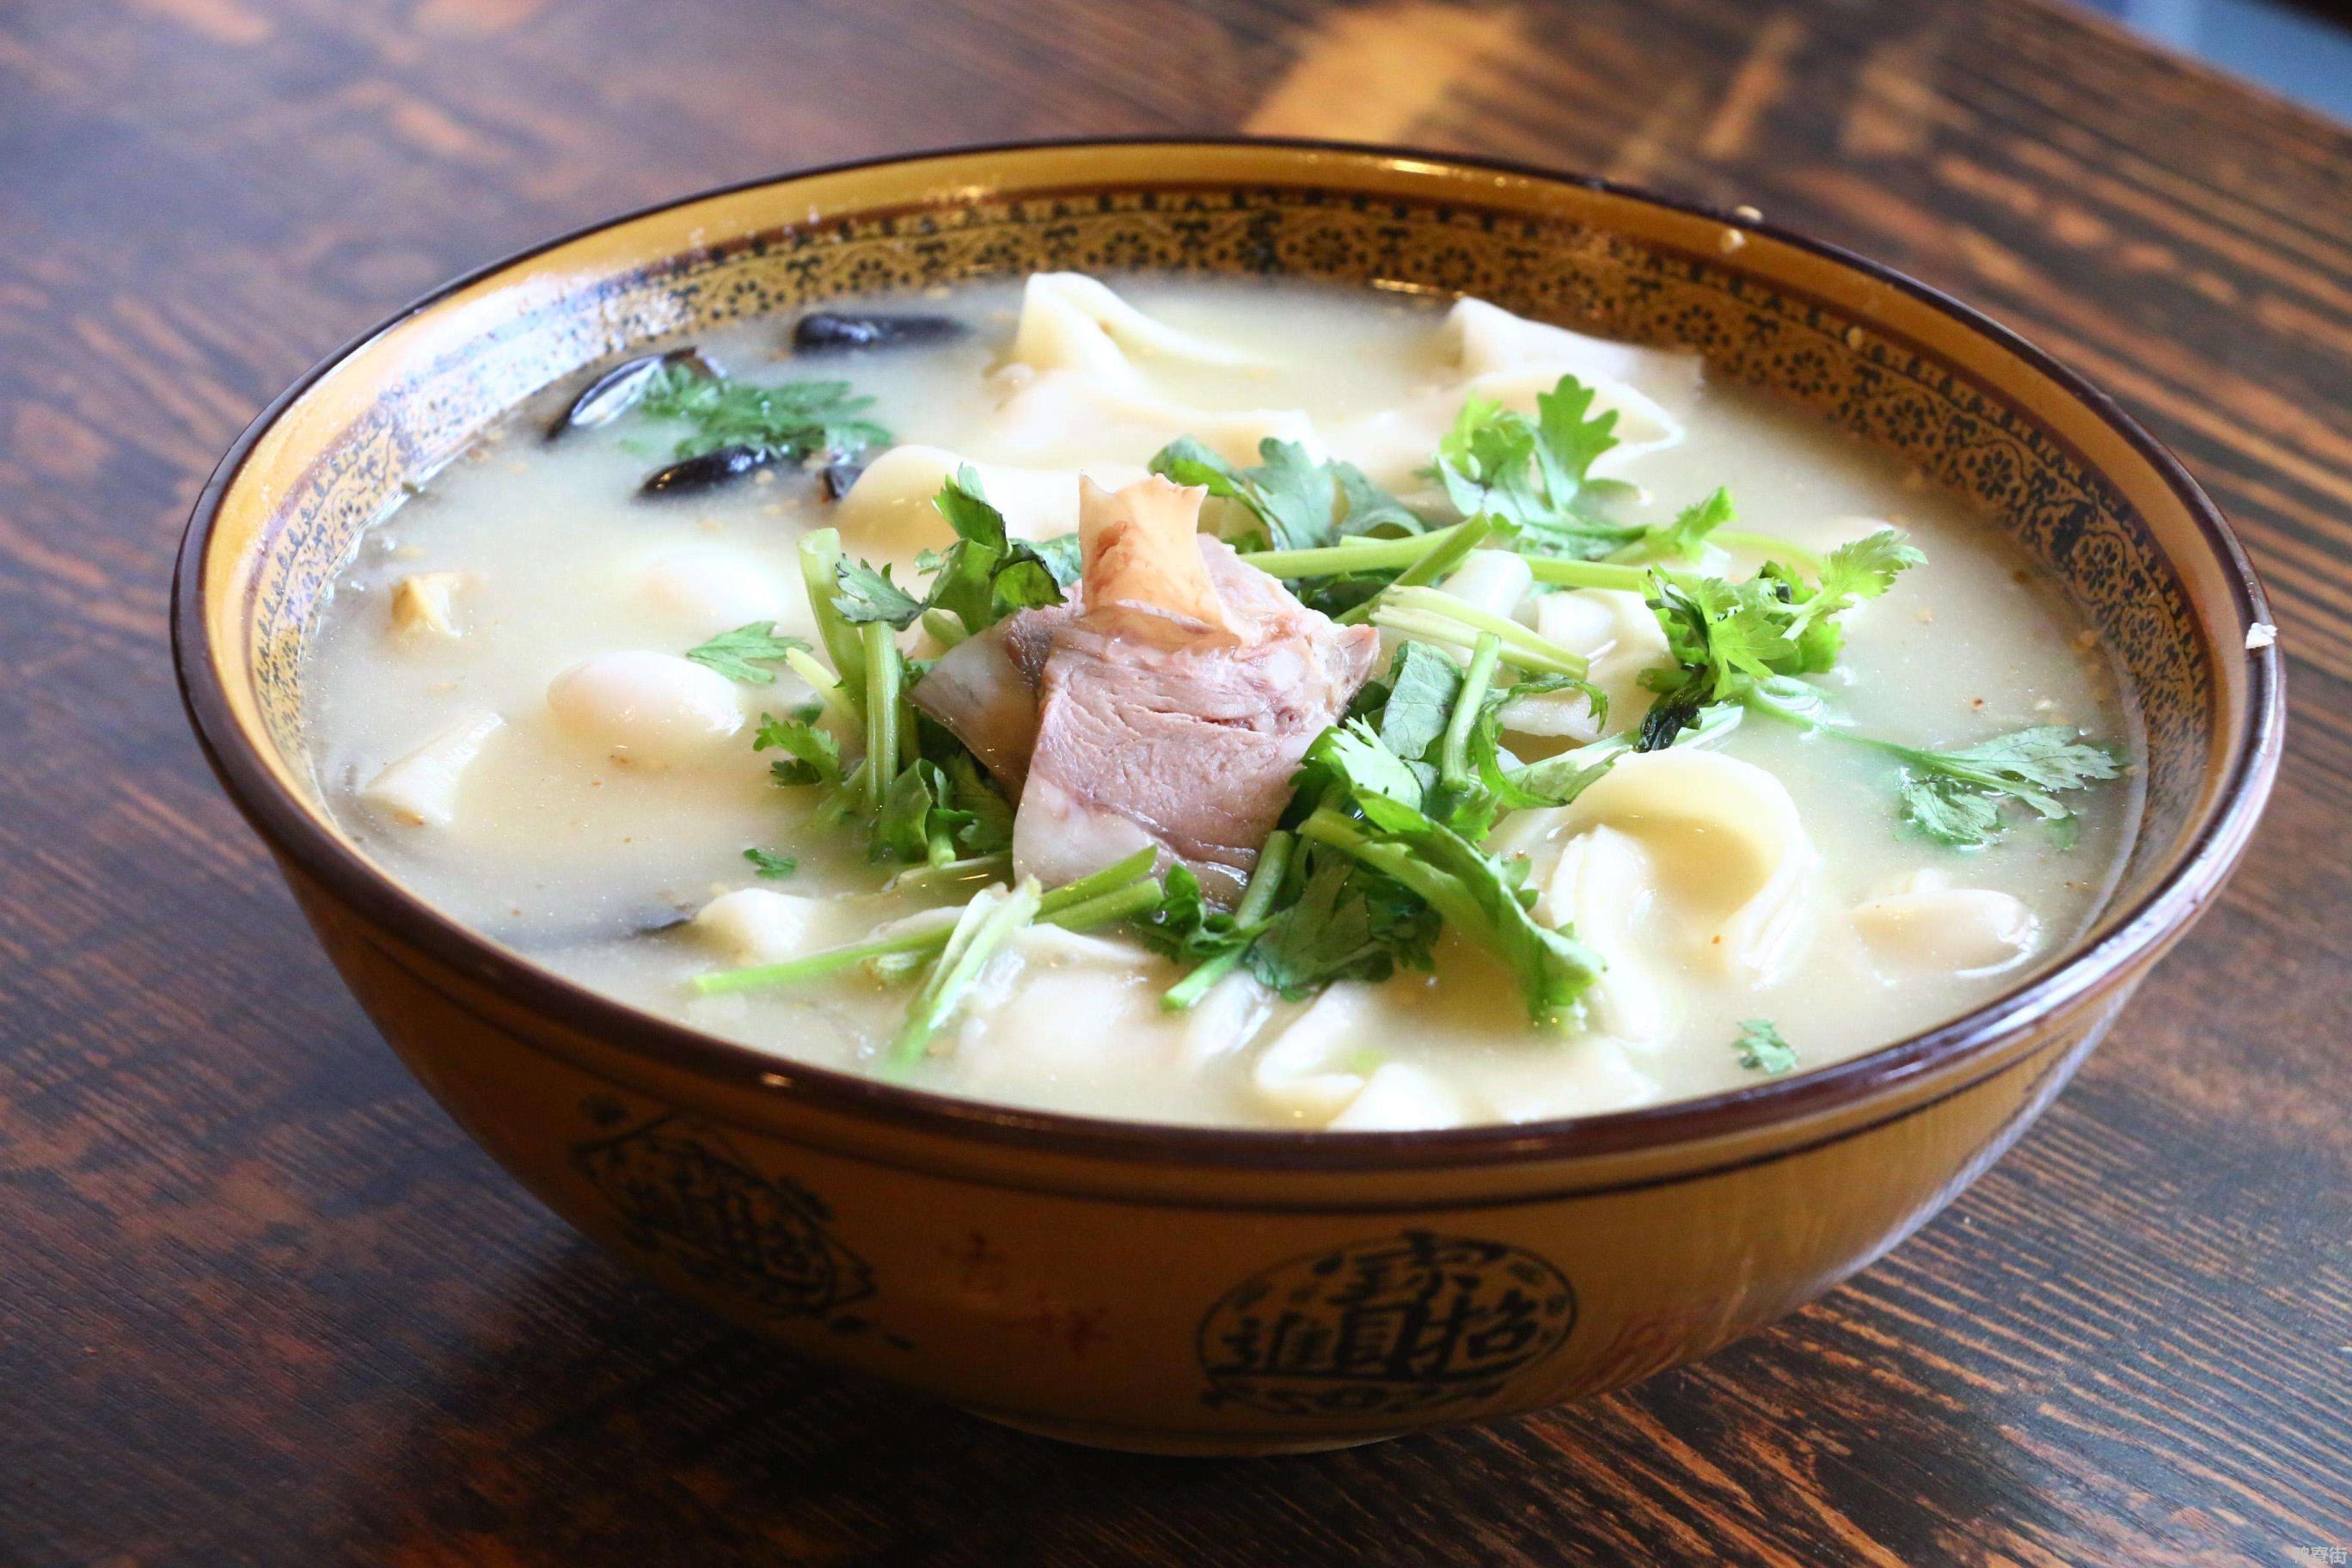 河南烩面是属于豫菜系的河南省地方特色菜品